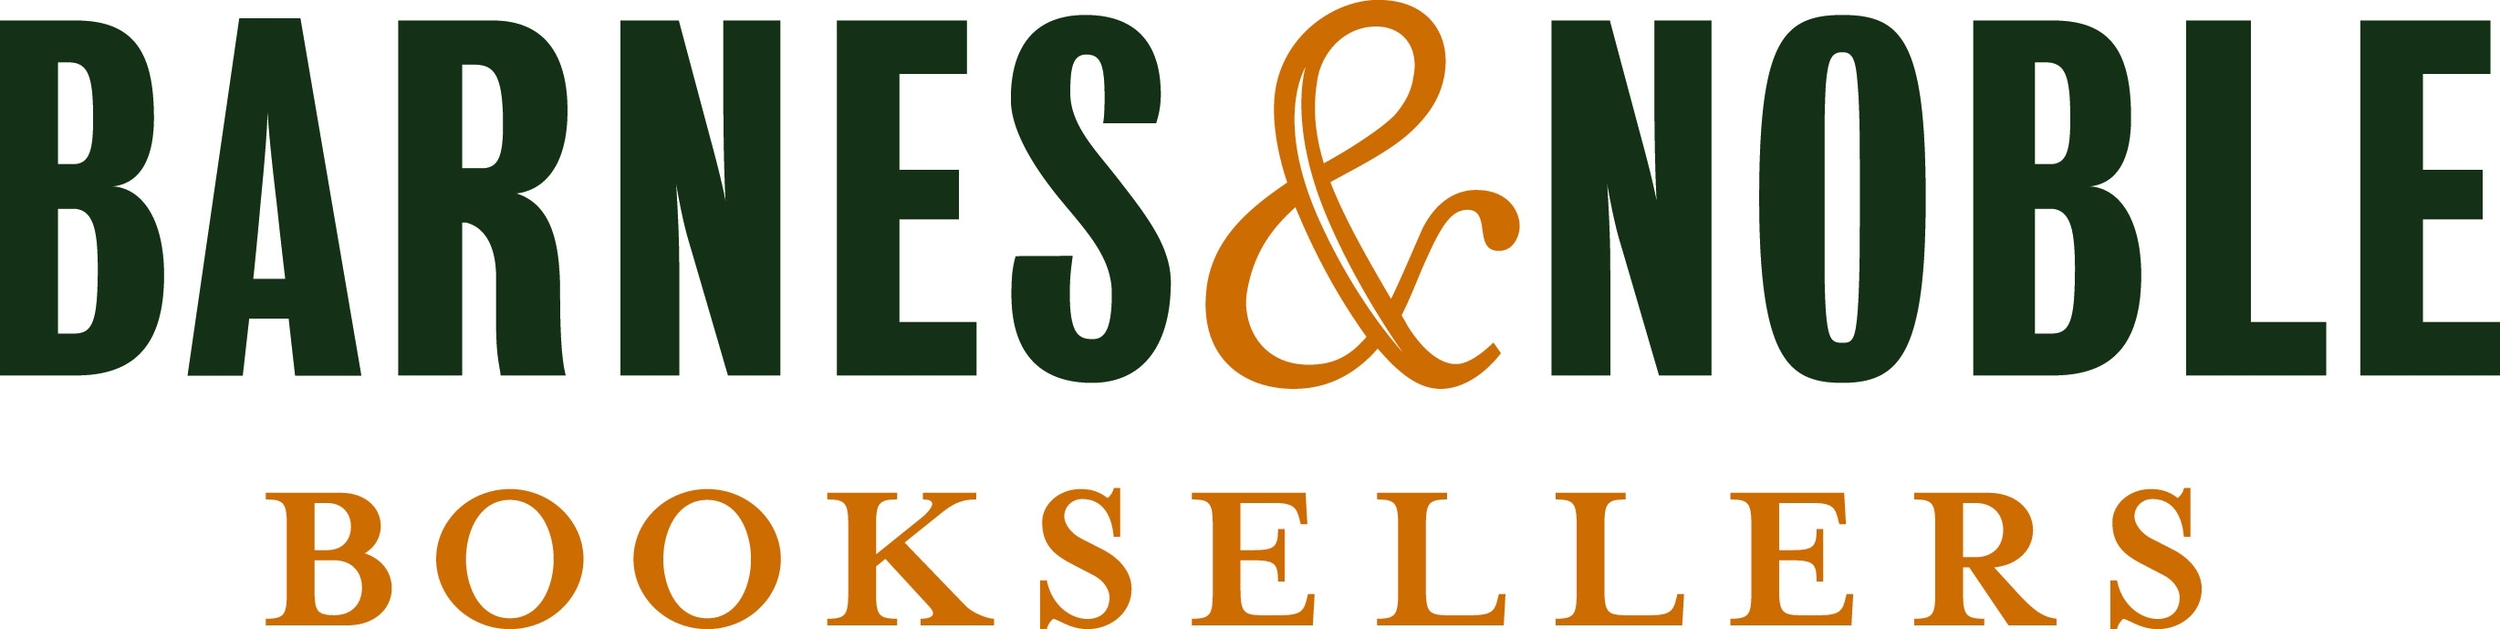 Barnes-Noble-logo.jpg